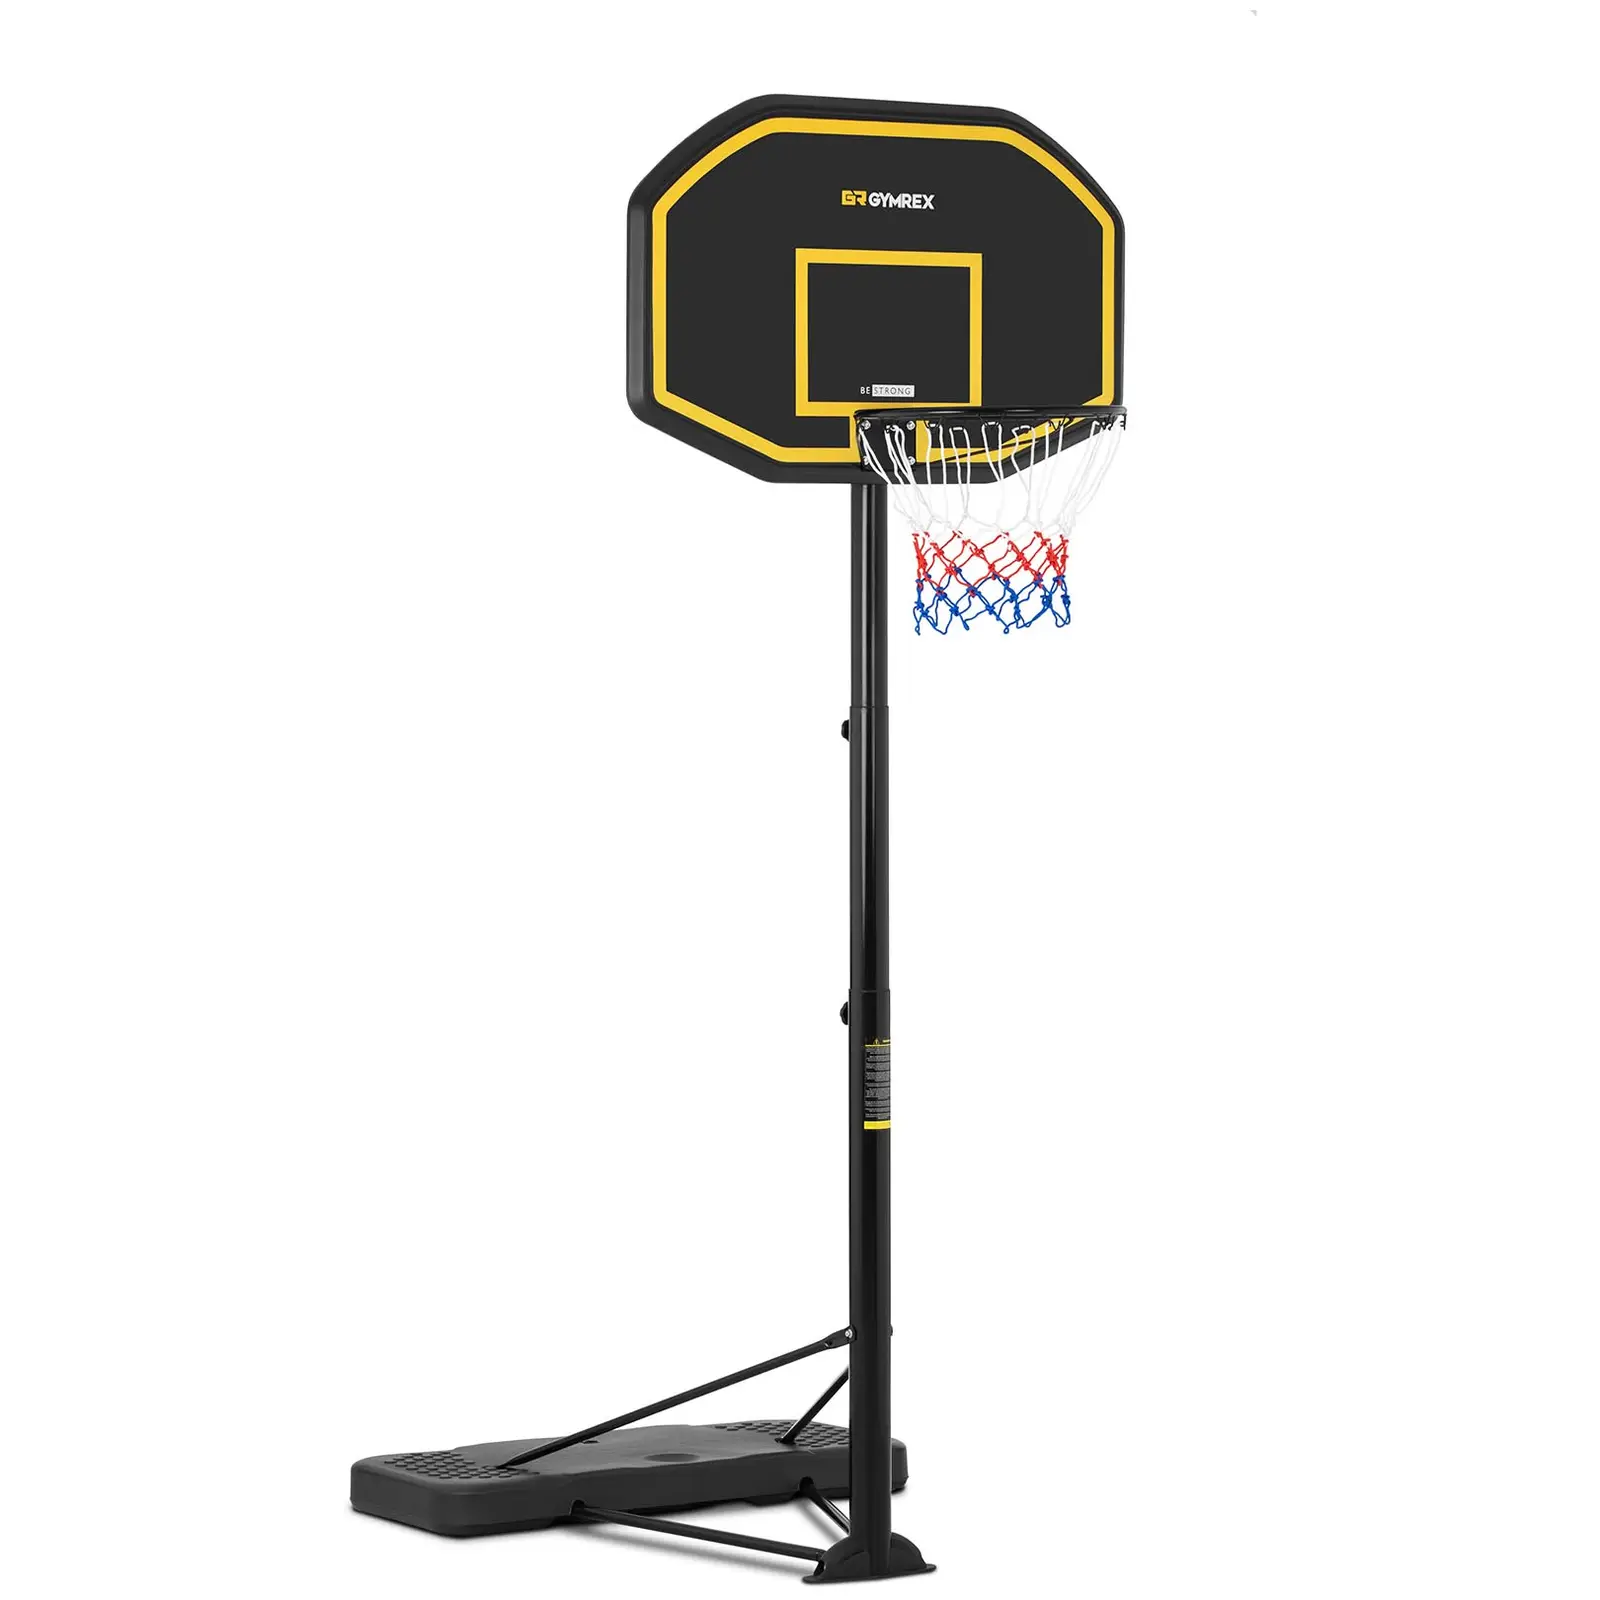 Krepšinio stovas - reguliuojamas aukštis - nuo 200 iki 305 cm